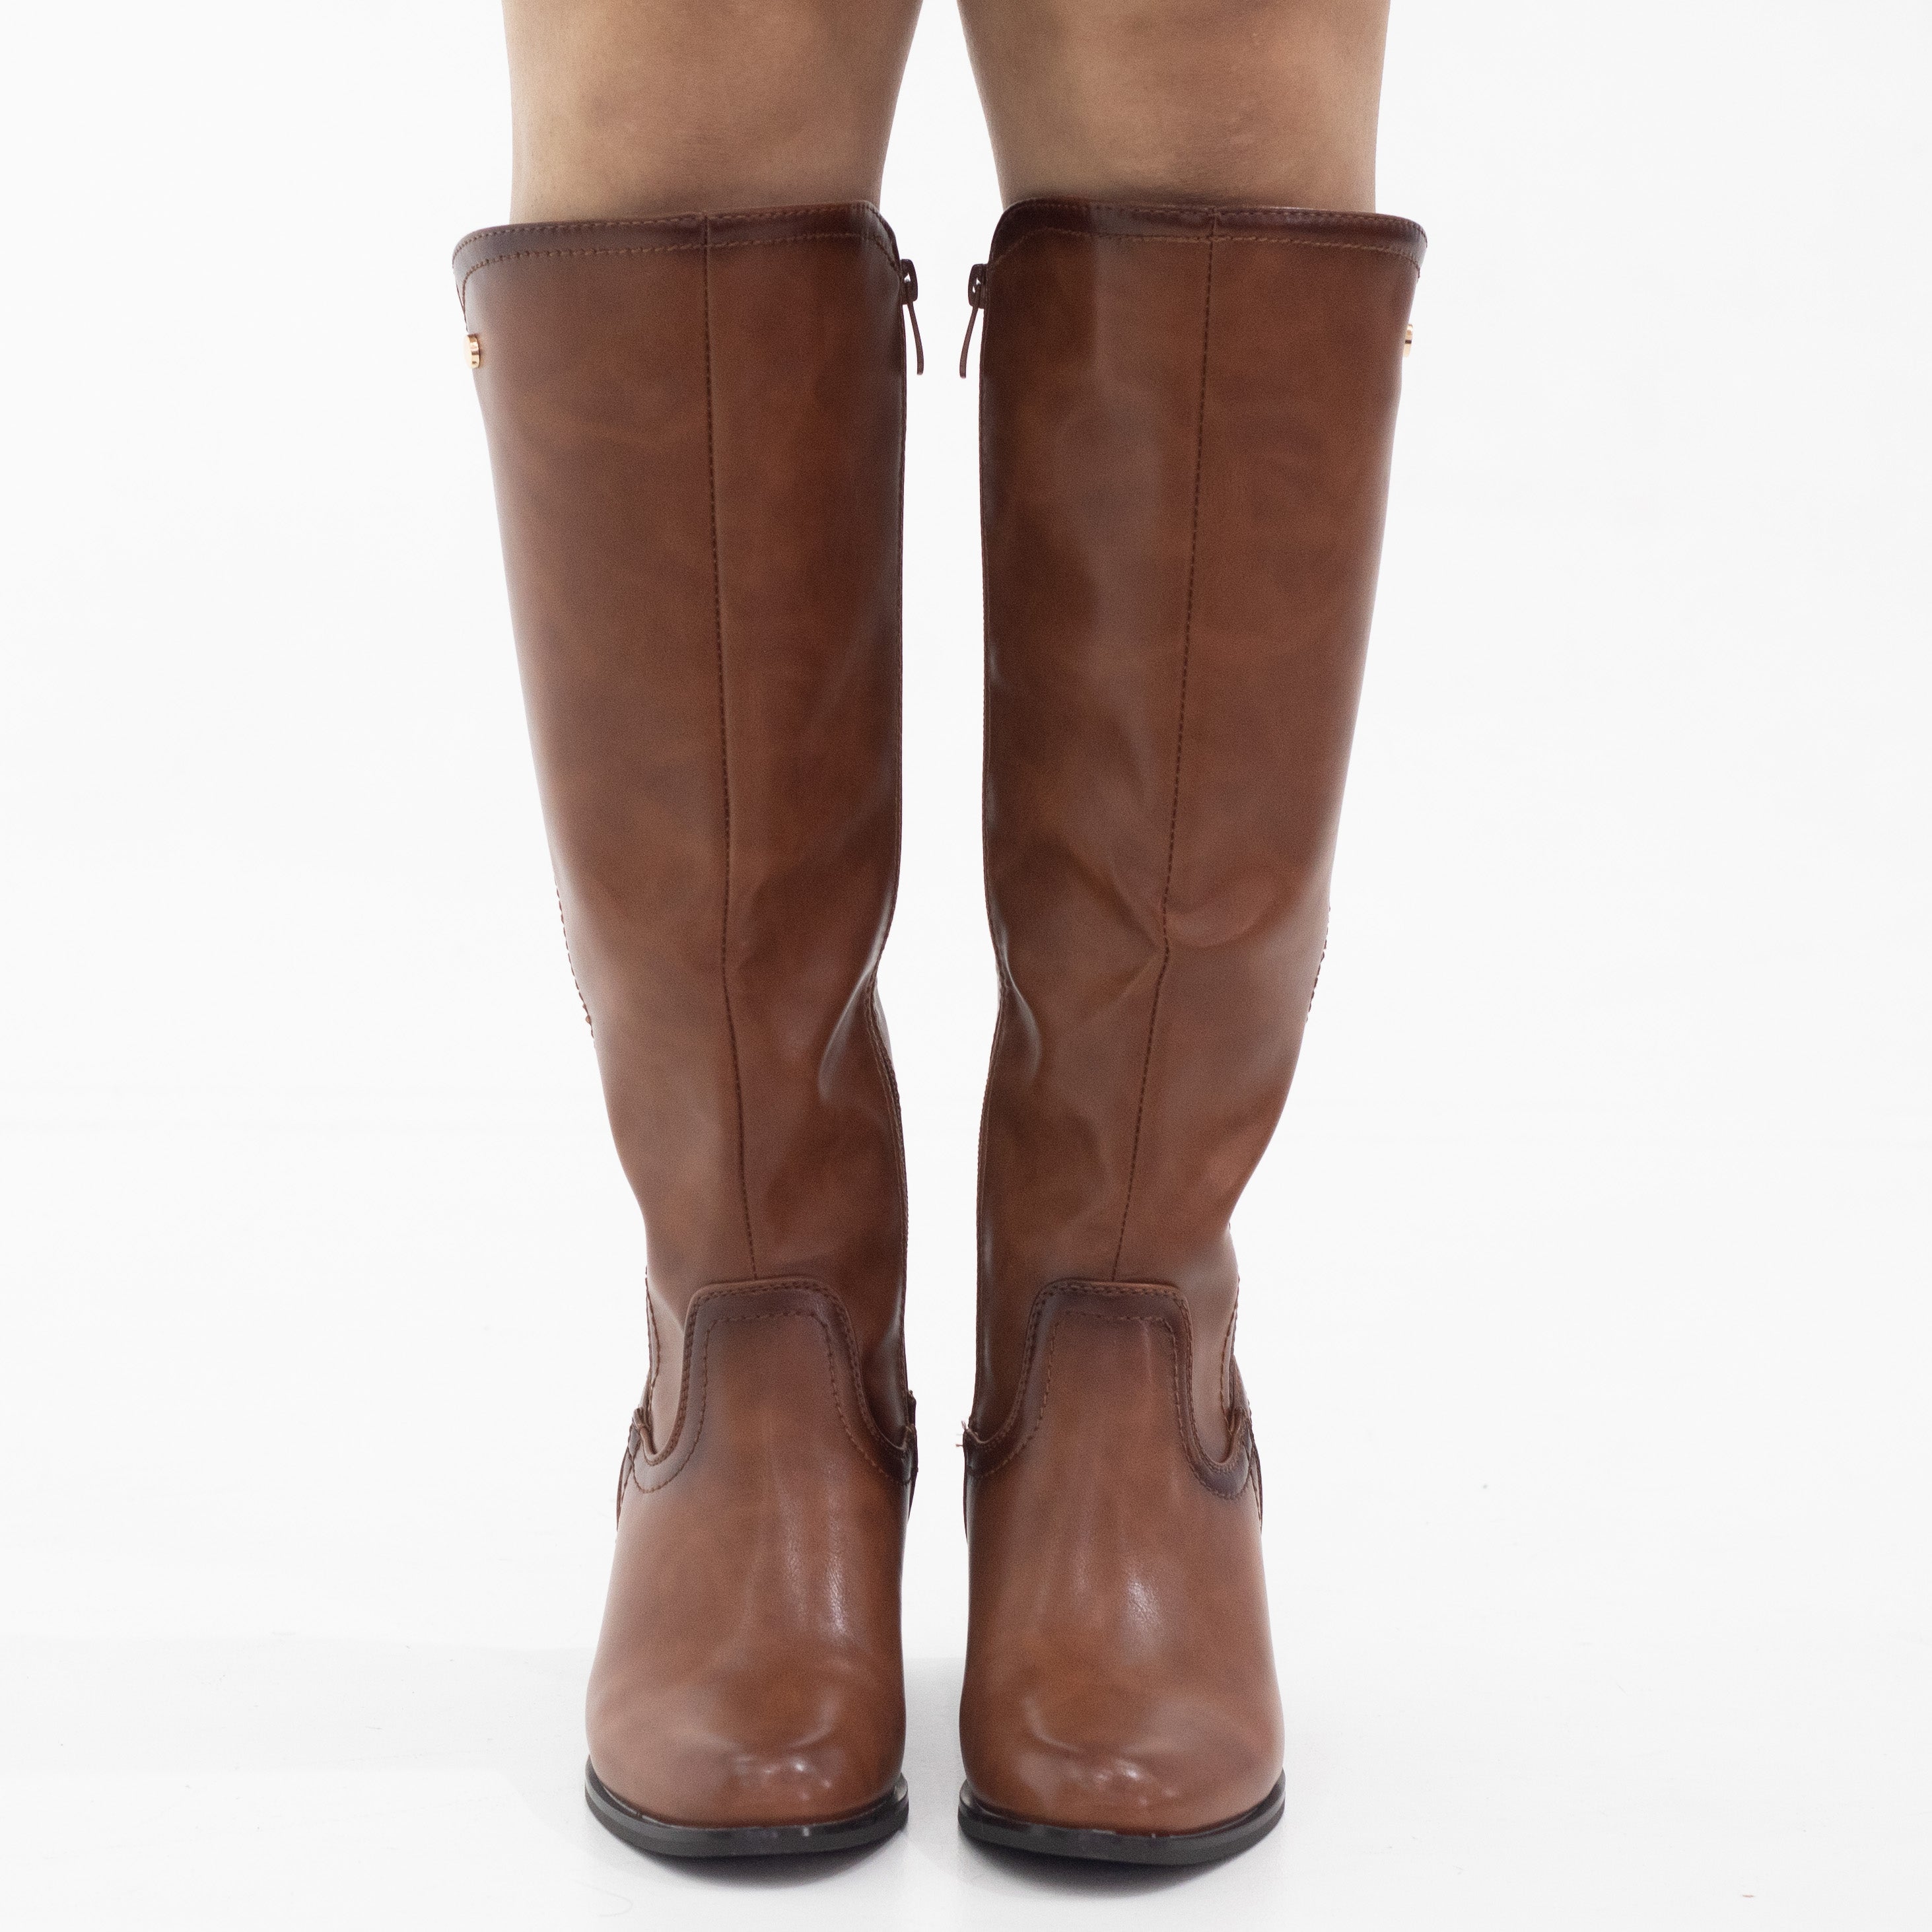 Tan knee high with elastic mat back boots 6cm heel yada